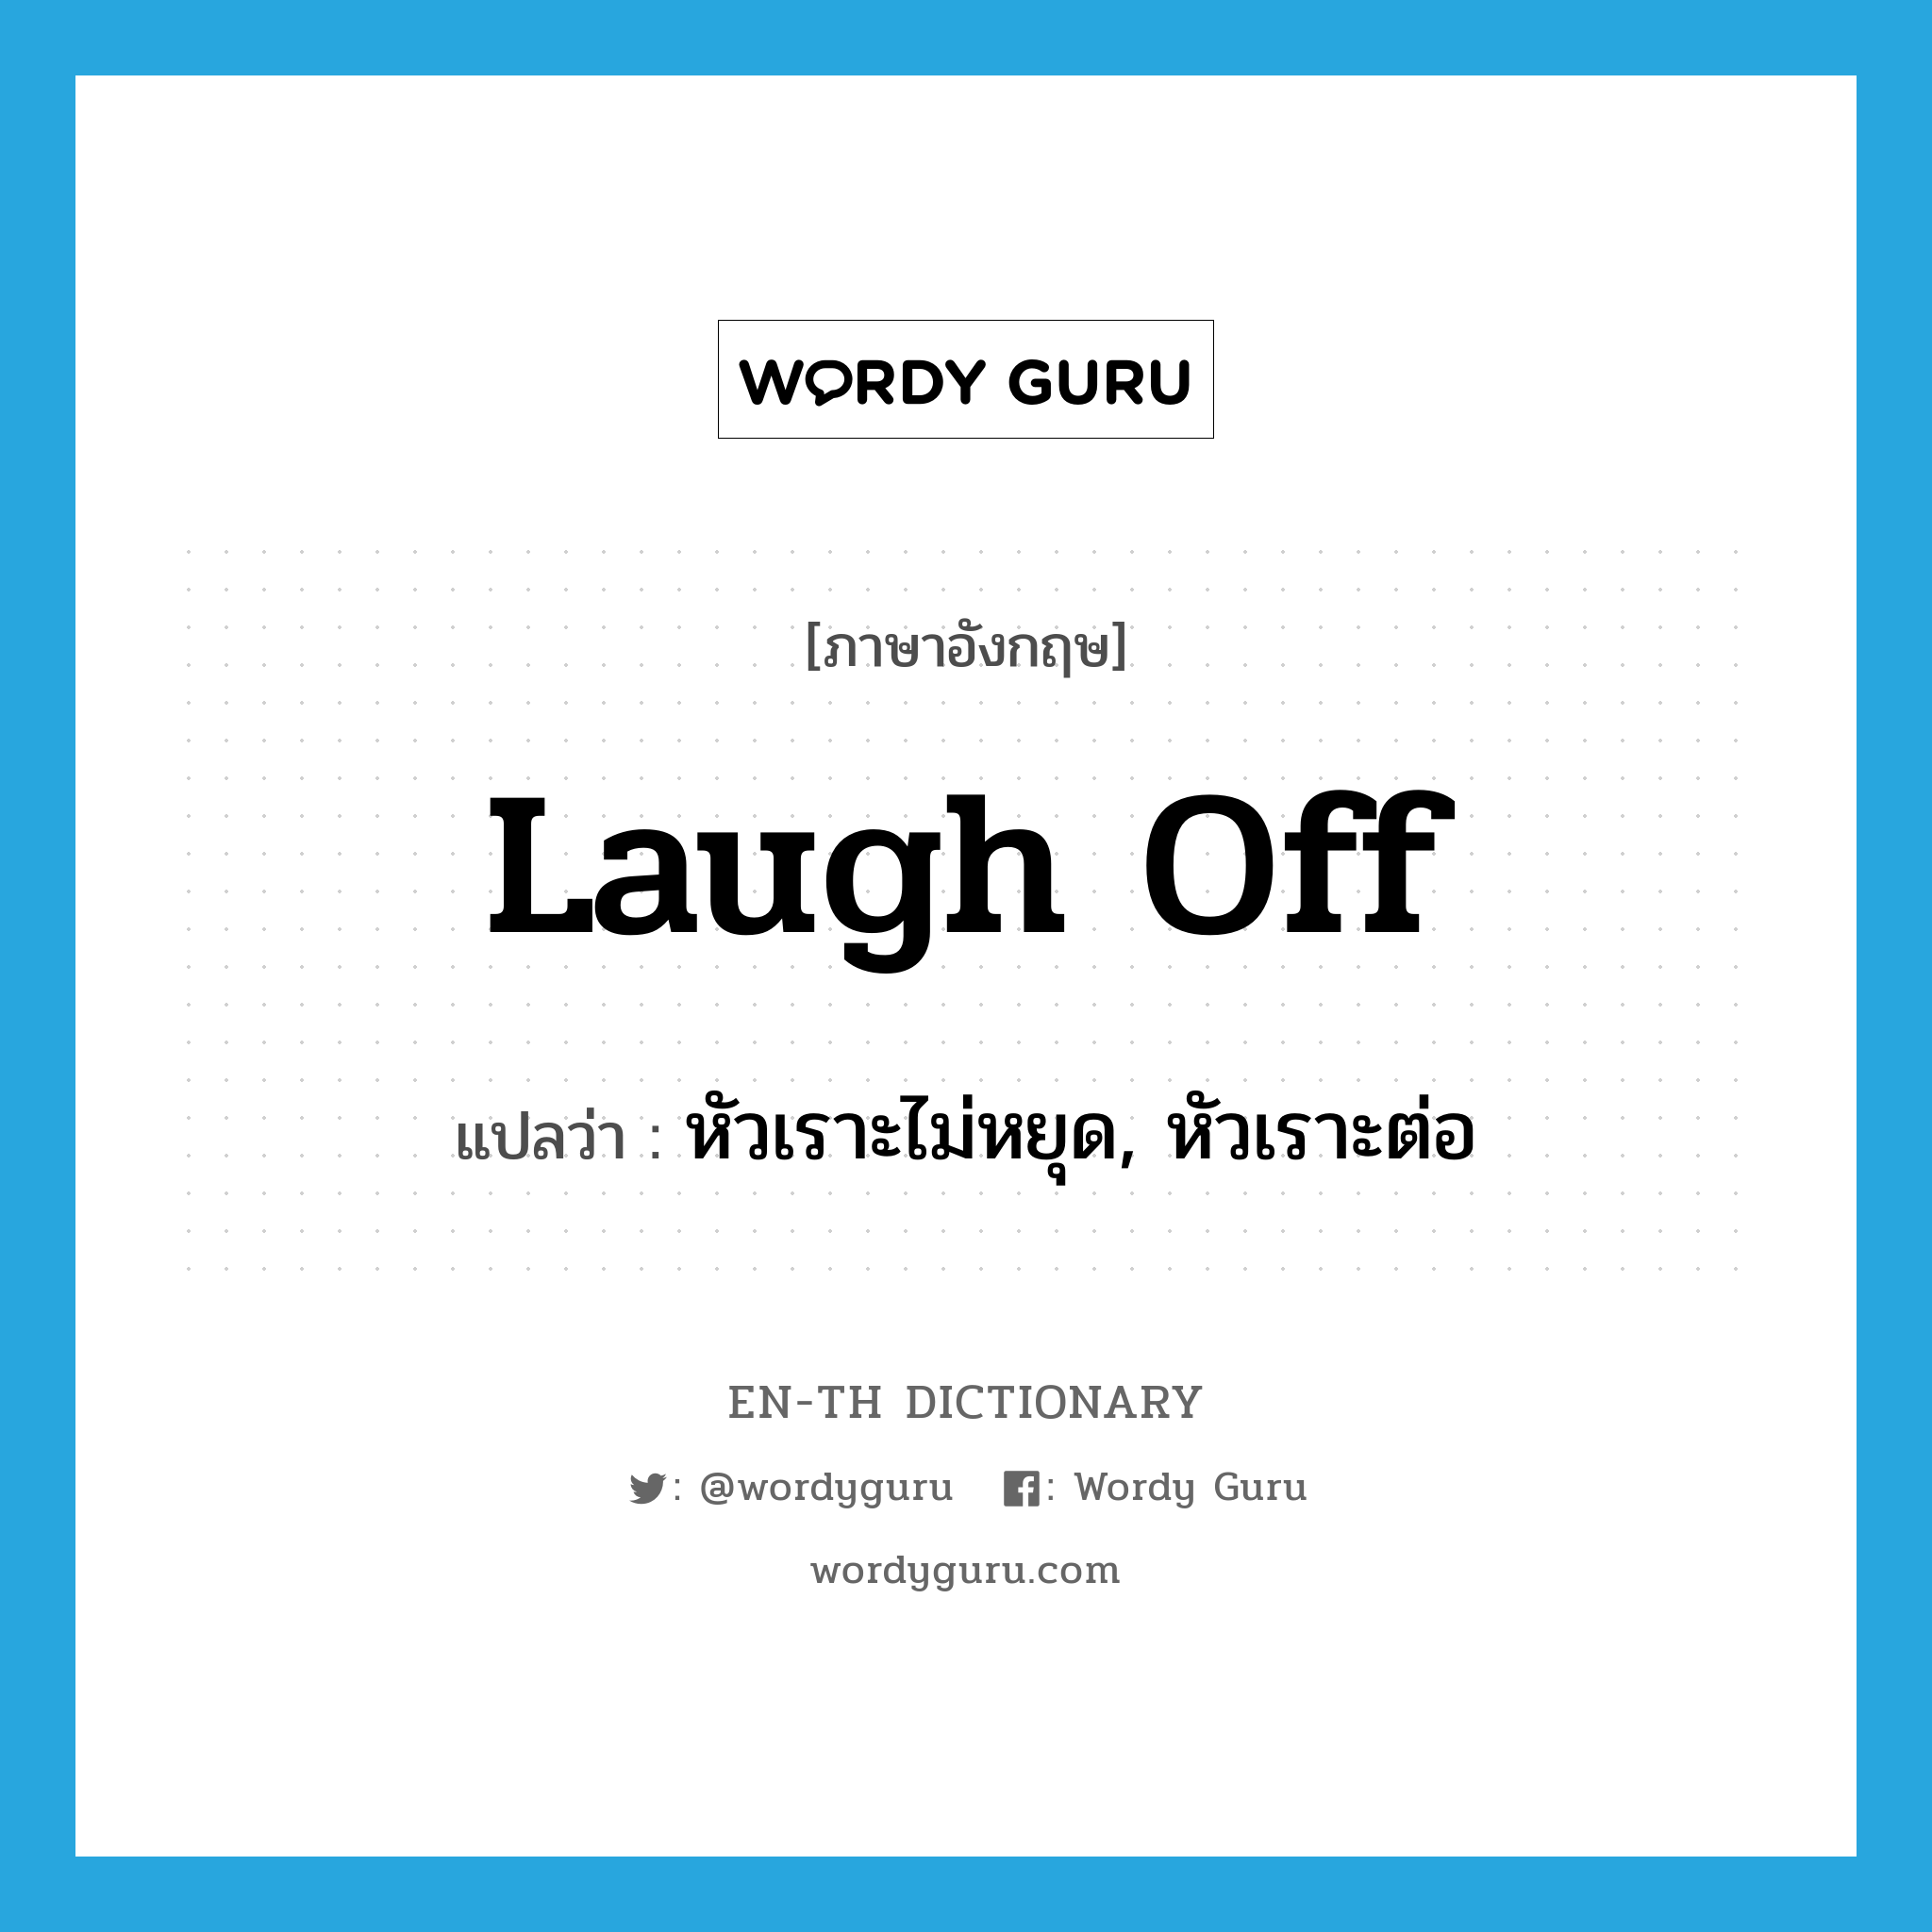 หัวเราะไม่หยุด, หัวเราะต่อ ภาษาอังกฤษ?, คำศัพท์ภาษาอังกฤษ หัวเราะไม่หยุด, หัวเราะต่อ แปลว่า laugh off ประเภท PHRV หมวด PHRV